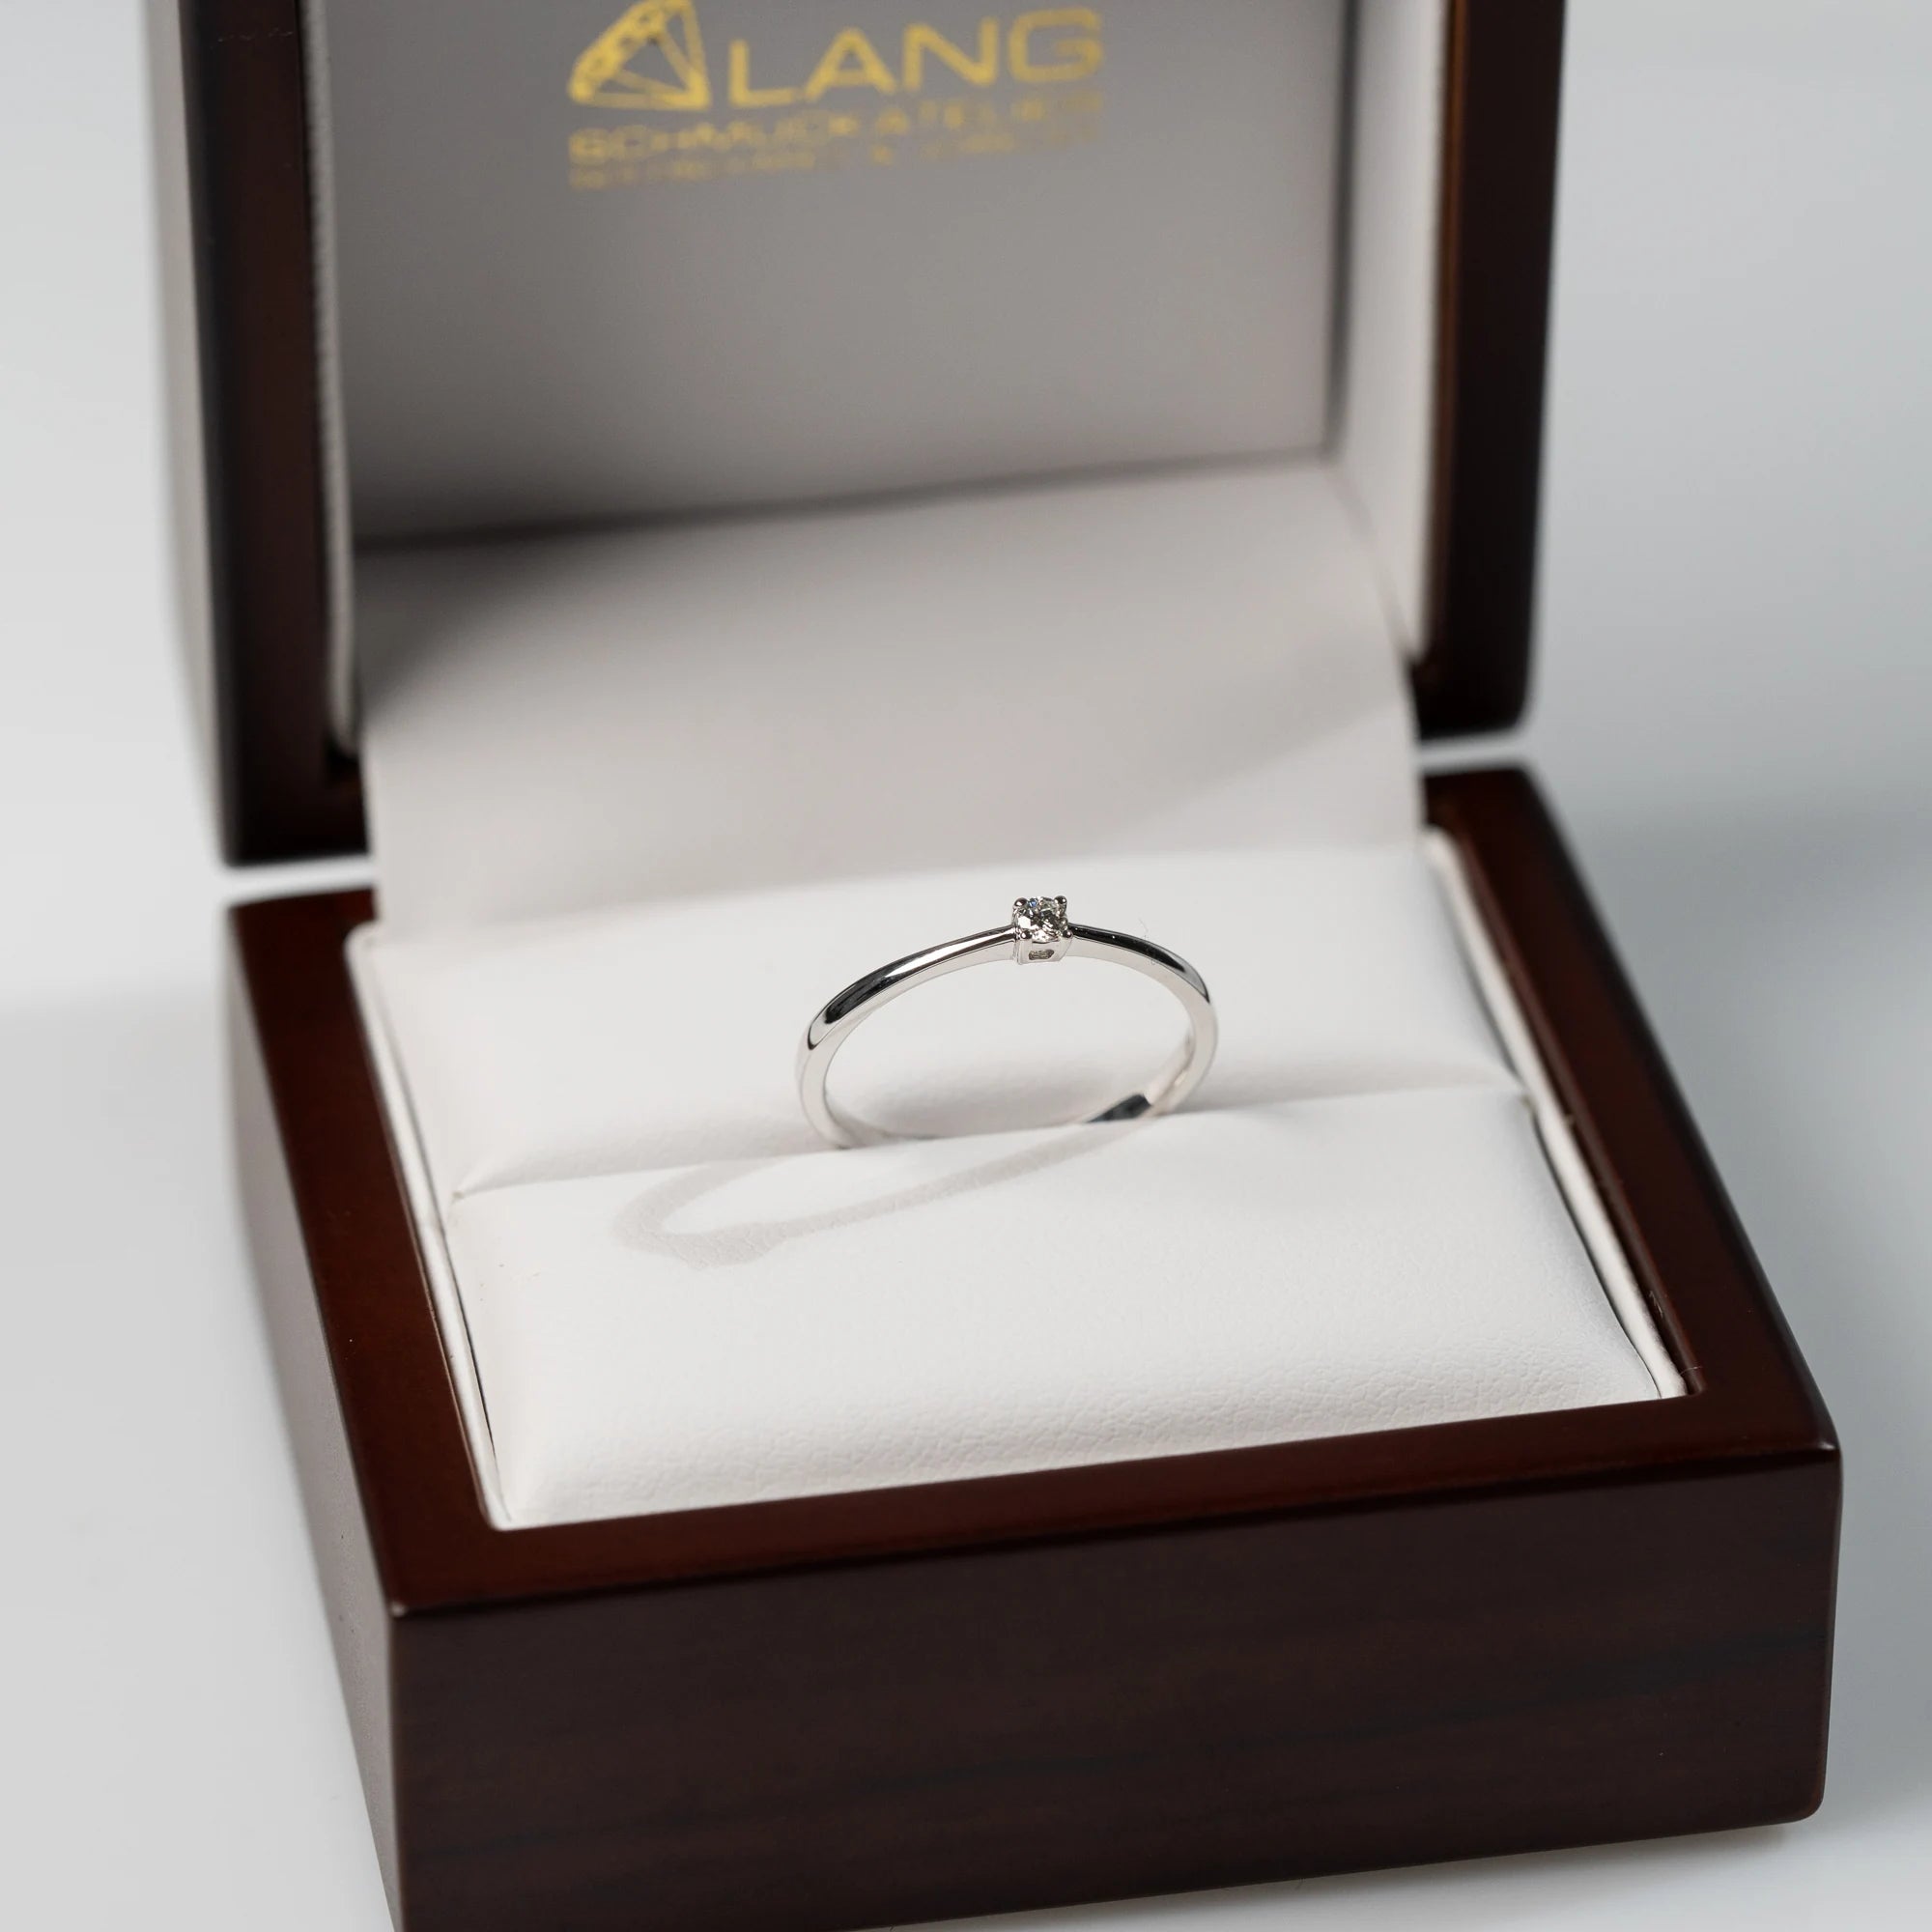 Verlobungsring "Forever" aus der Schmuckatelier Lang Collection mit einem in einer 4er Kappe gefassten Diamanten mit einem Gewicht von 0.05 Carat steckt in der hölzernen Schmuck-Box